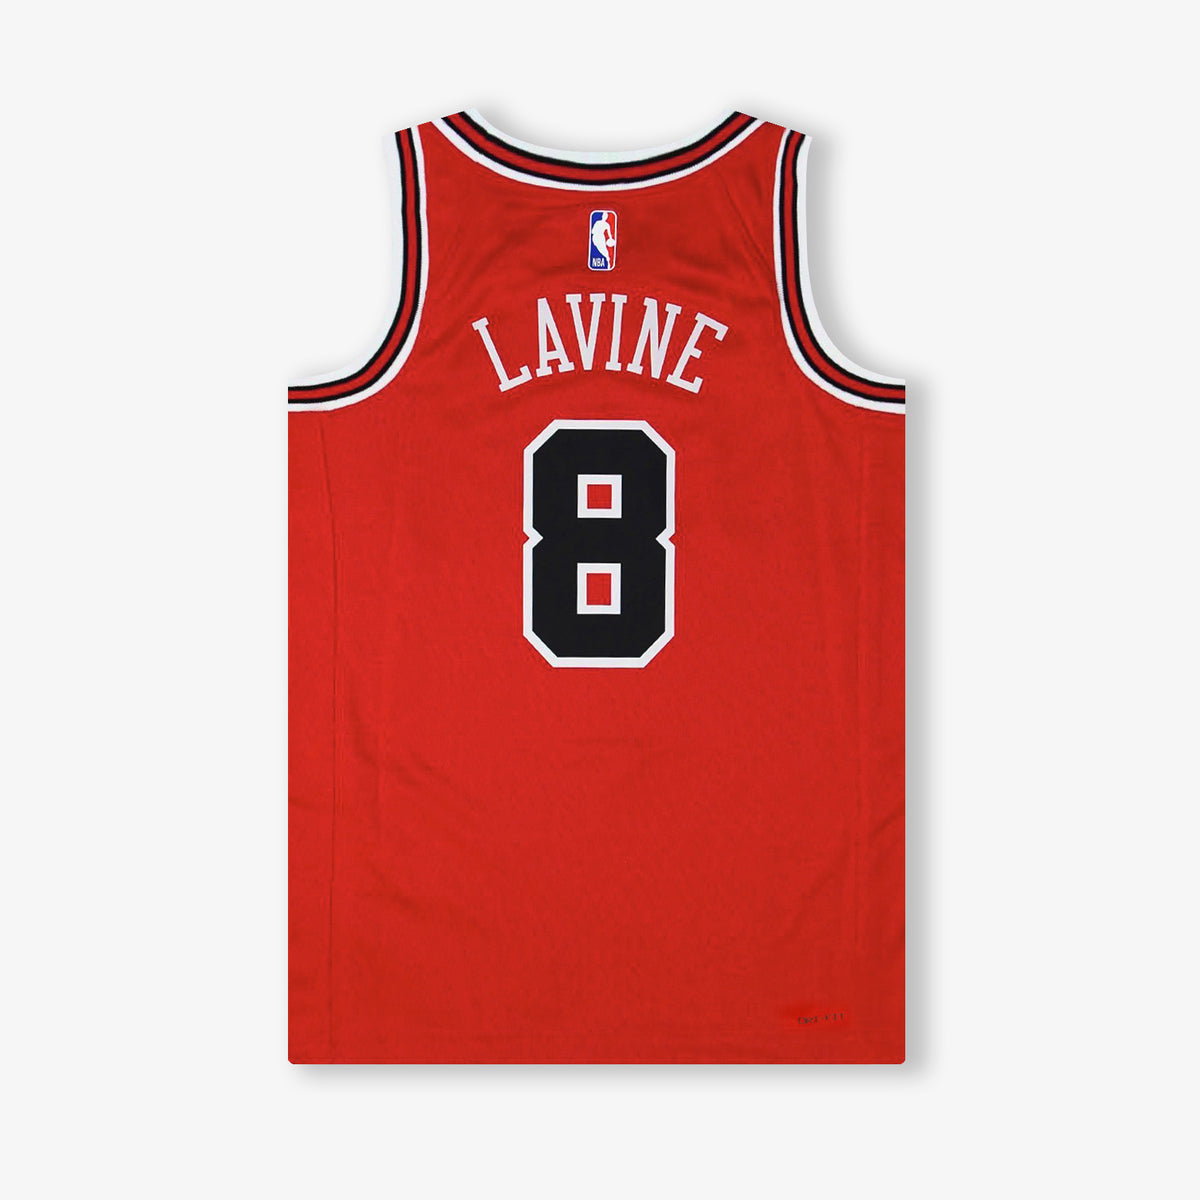 Zach LaVine Chicago Bulls Jerseys, Zach LaVine Bulls Basketball Jerseys